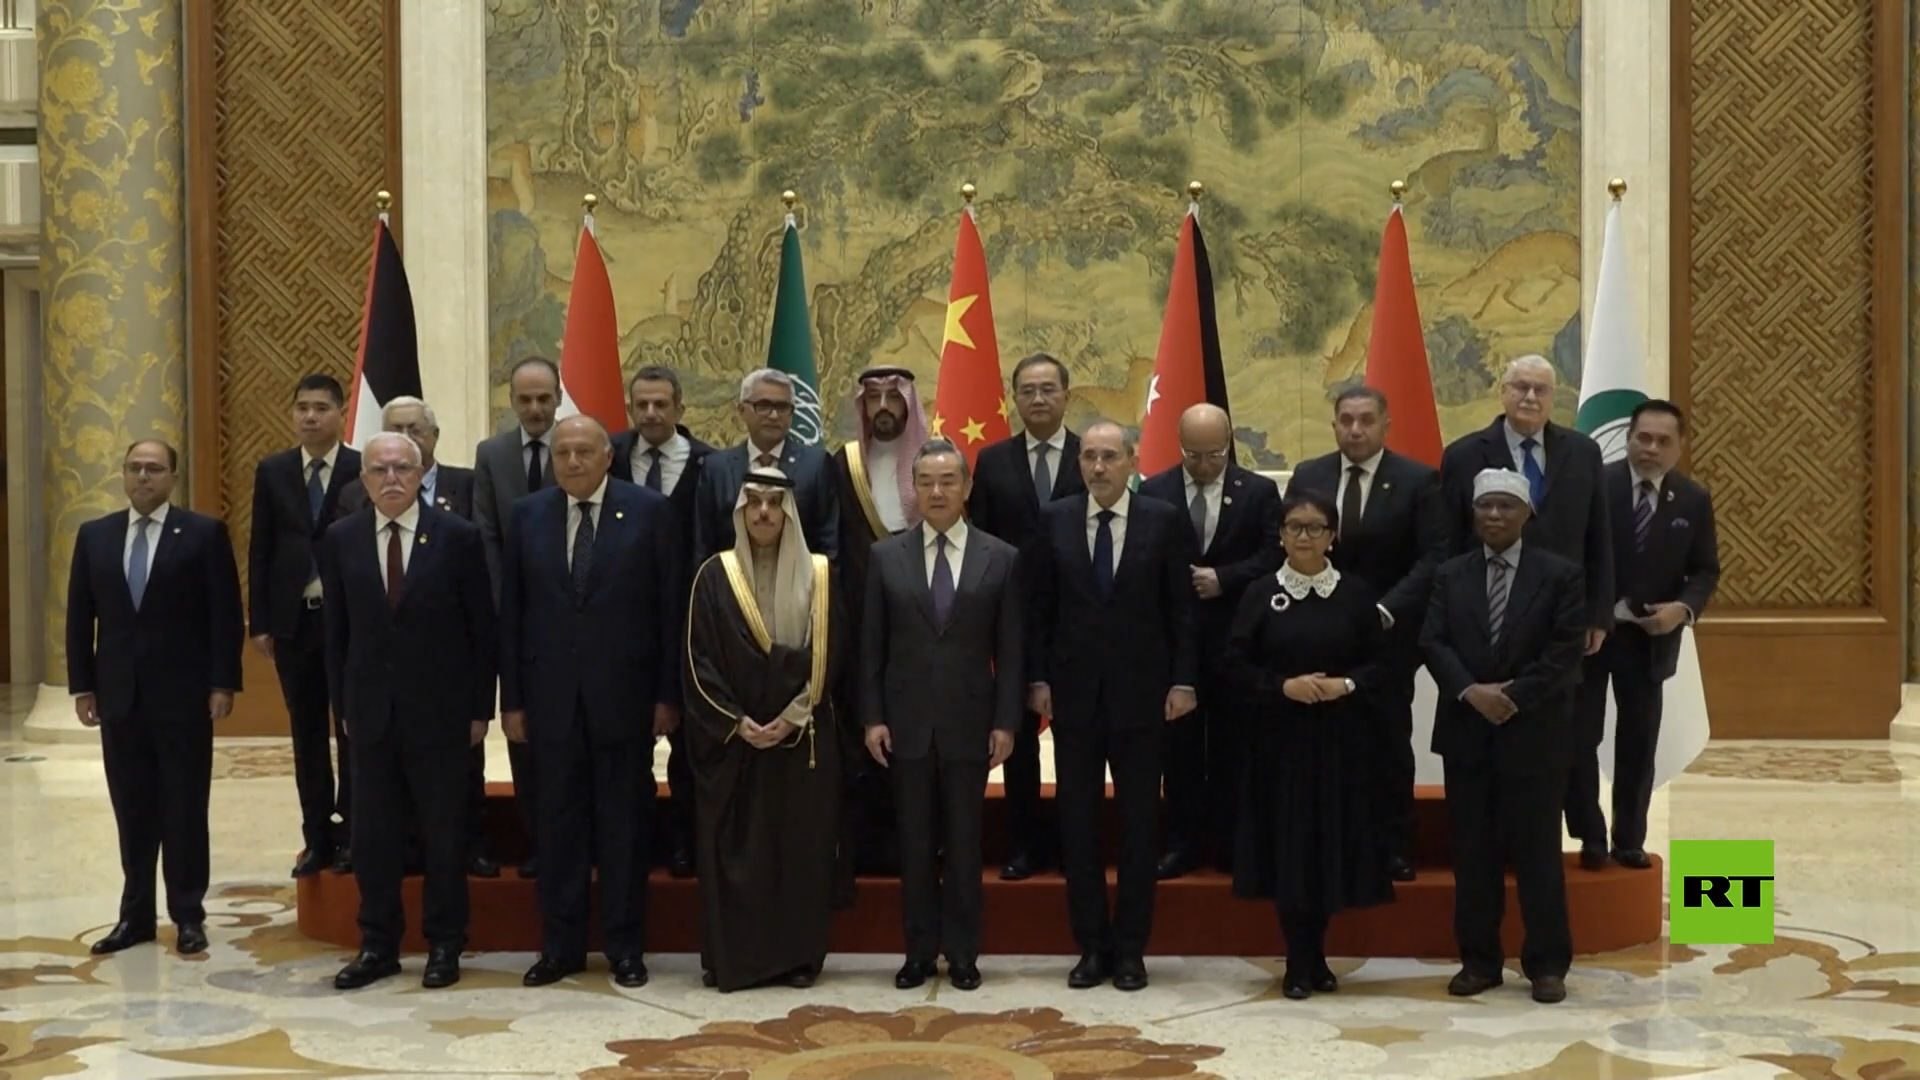 صورة جماعية لوزراء خارجية عرب قبيل الاجتماع في الصين